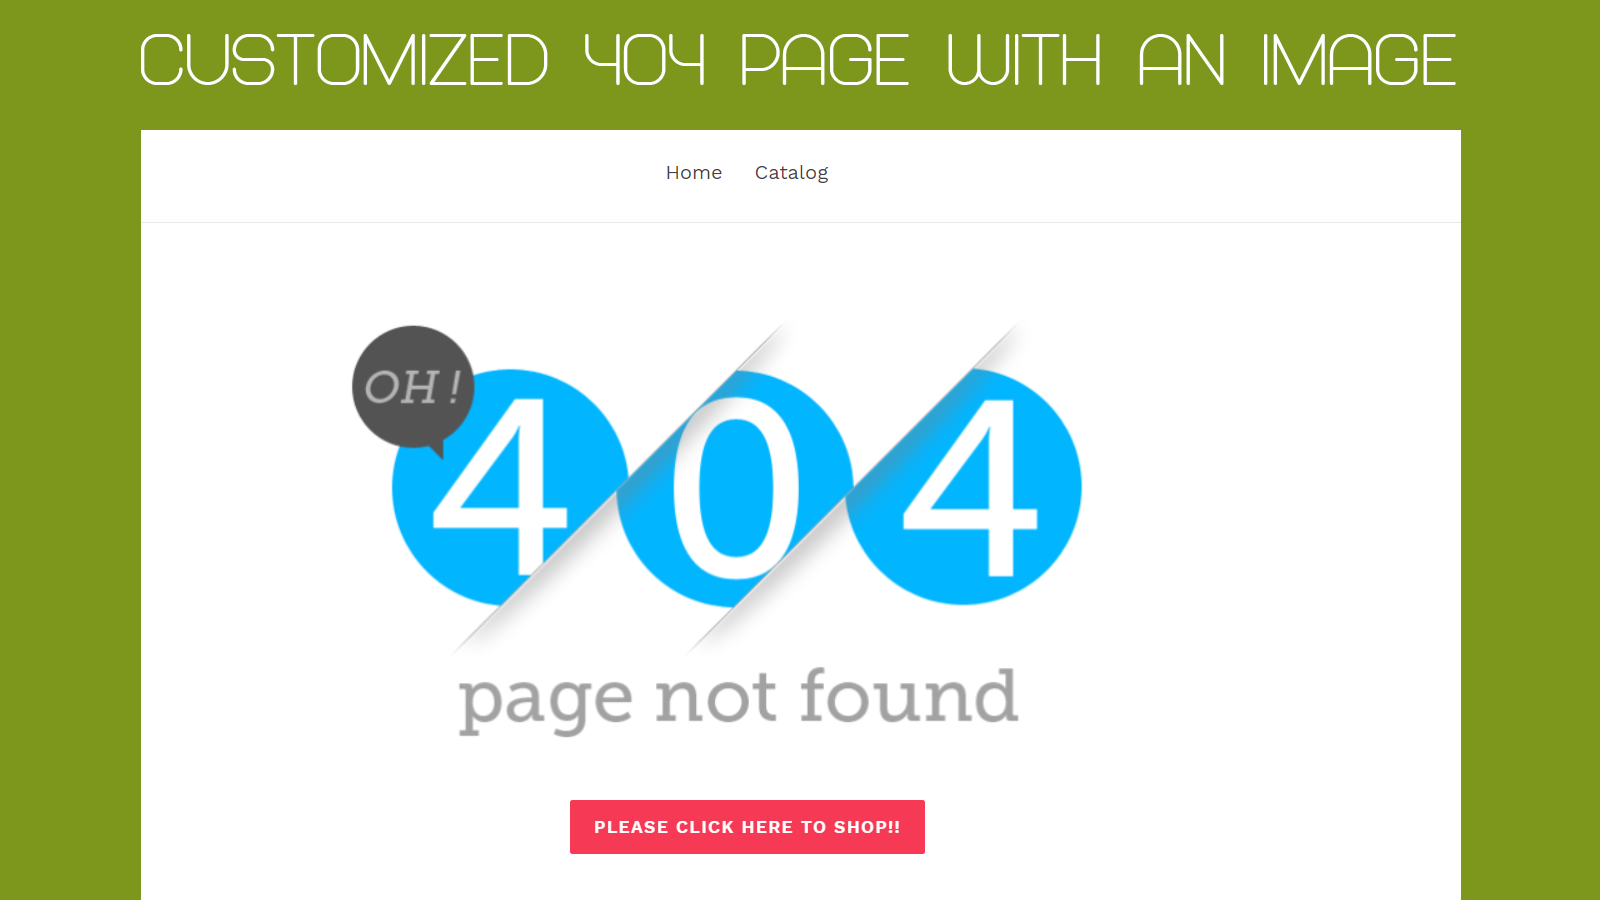 Zooomy 404 custom page